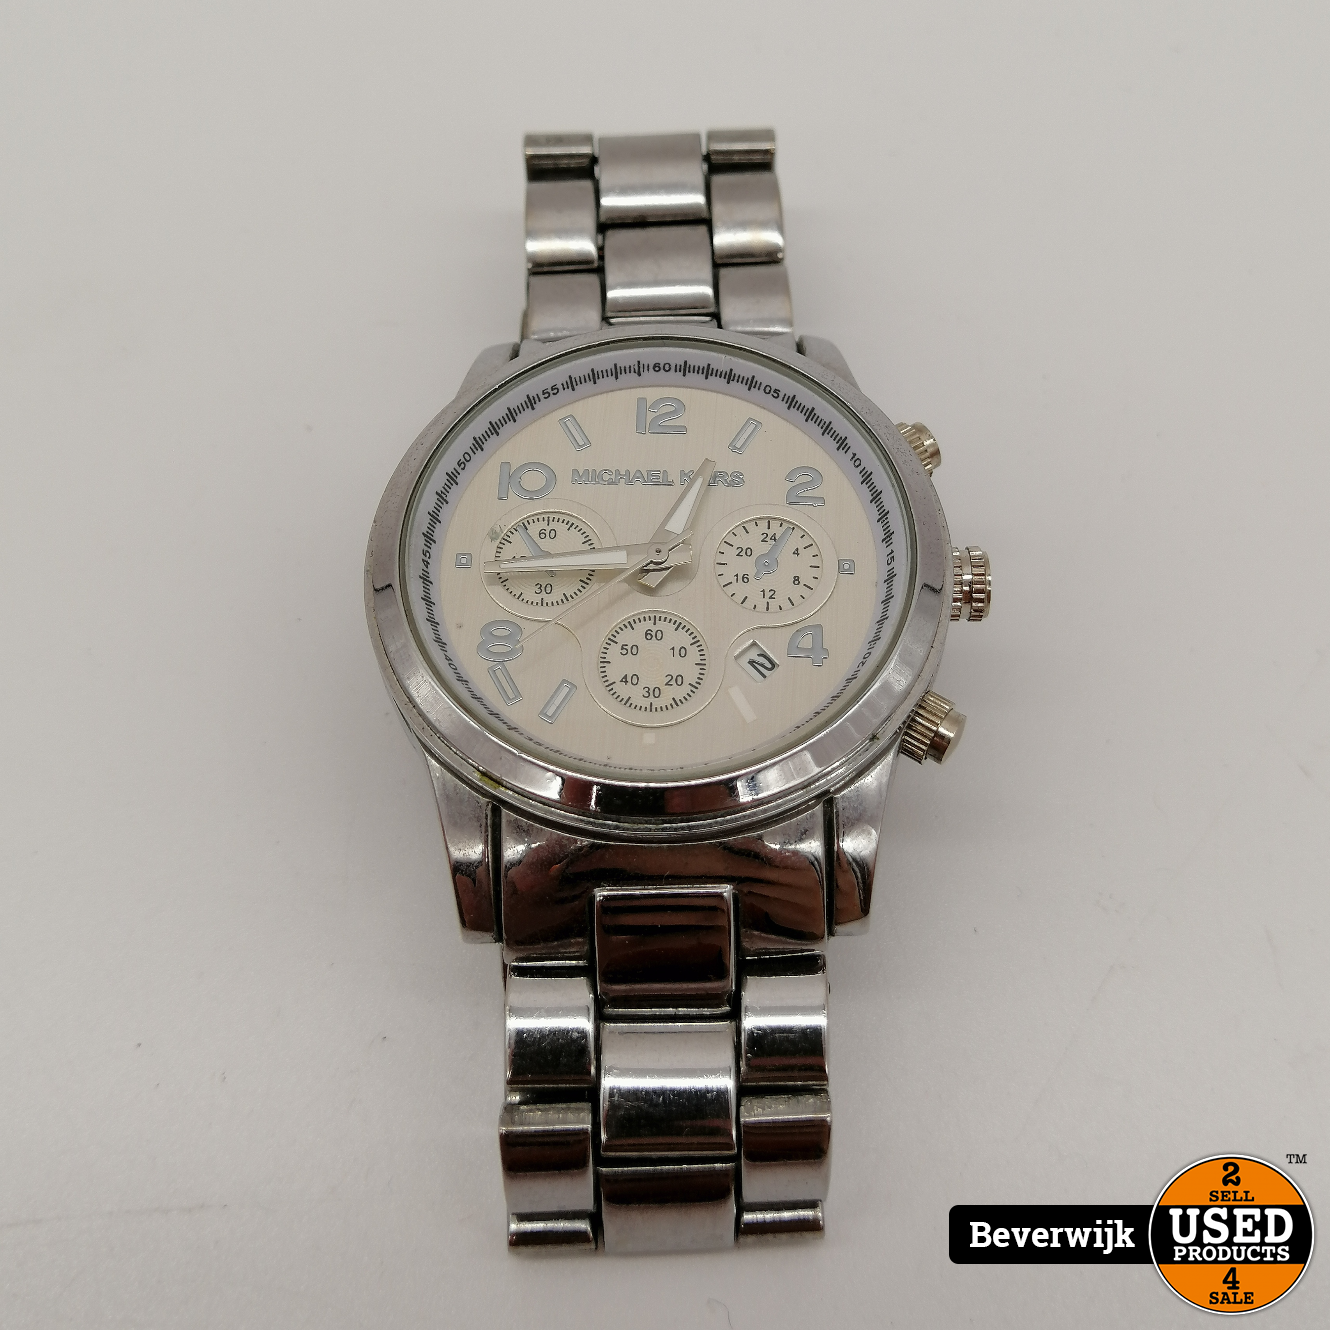 Kerel bijtend Verdienen Michael Kors MK-1038 - Dames Horloge | Batterij is leeg | In gebruikte  staat - Used Products Beverwijk